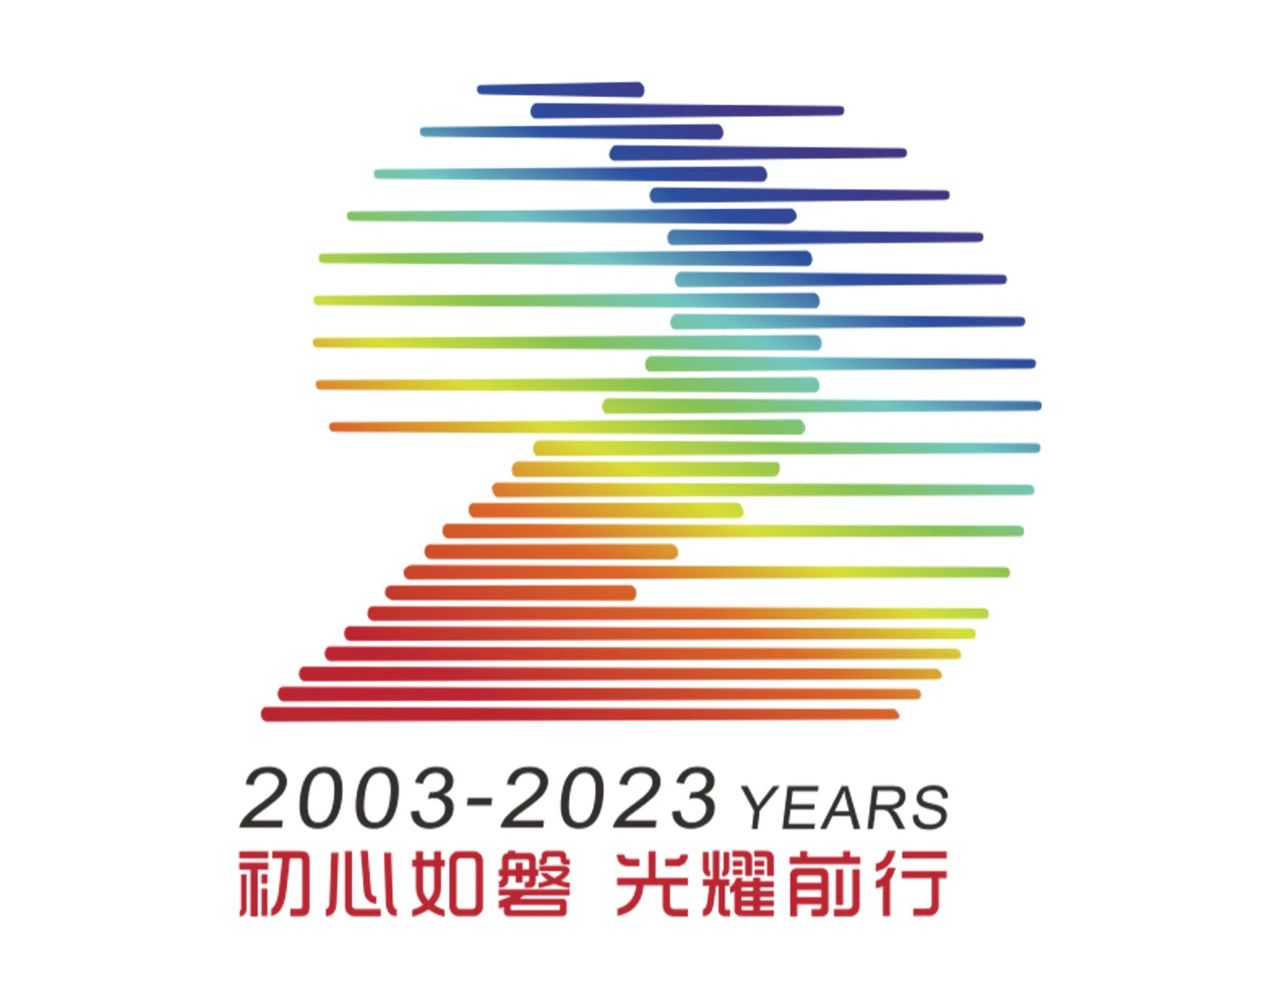 初心如磐，光耀前行｜磐石品牌20周年logo及slogan正式发布